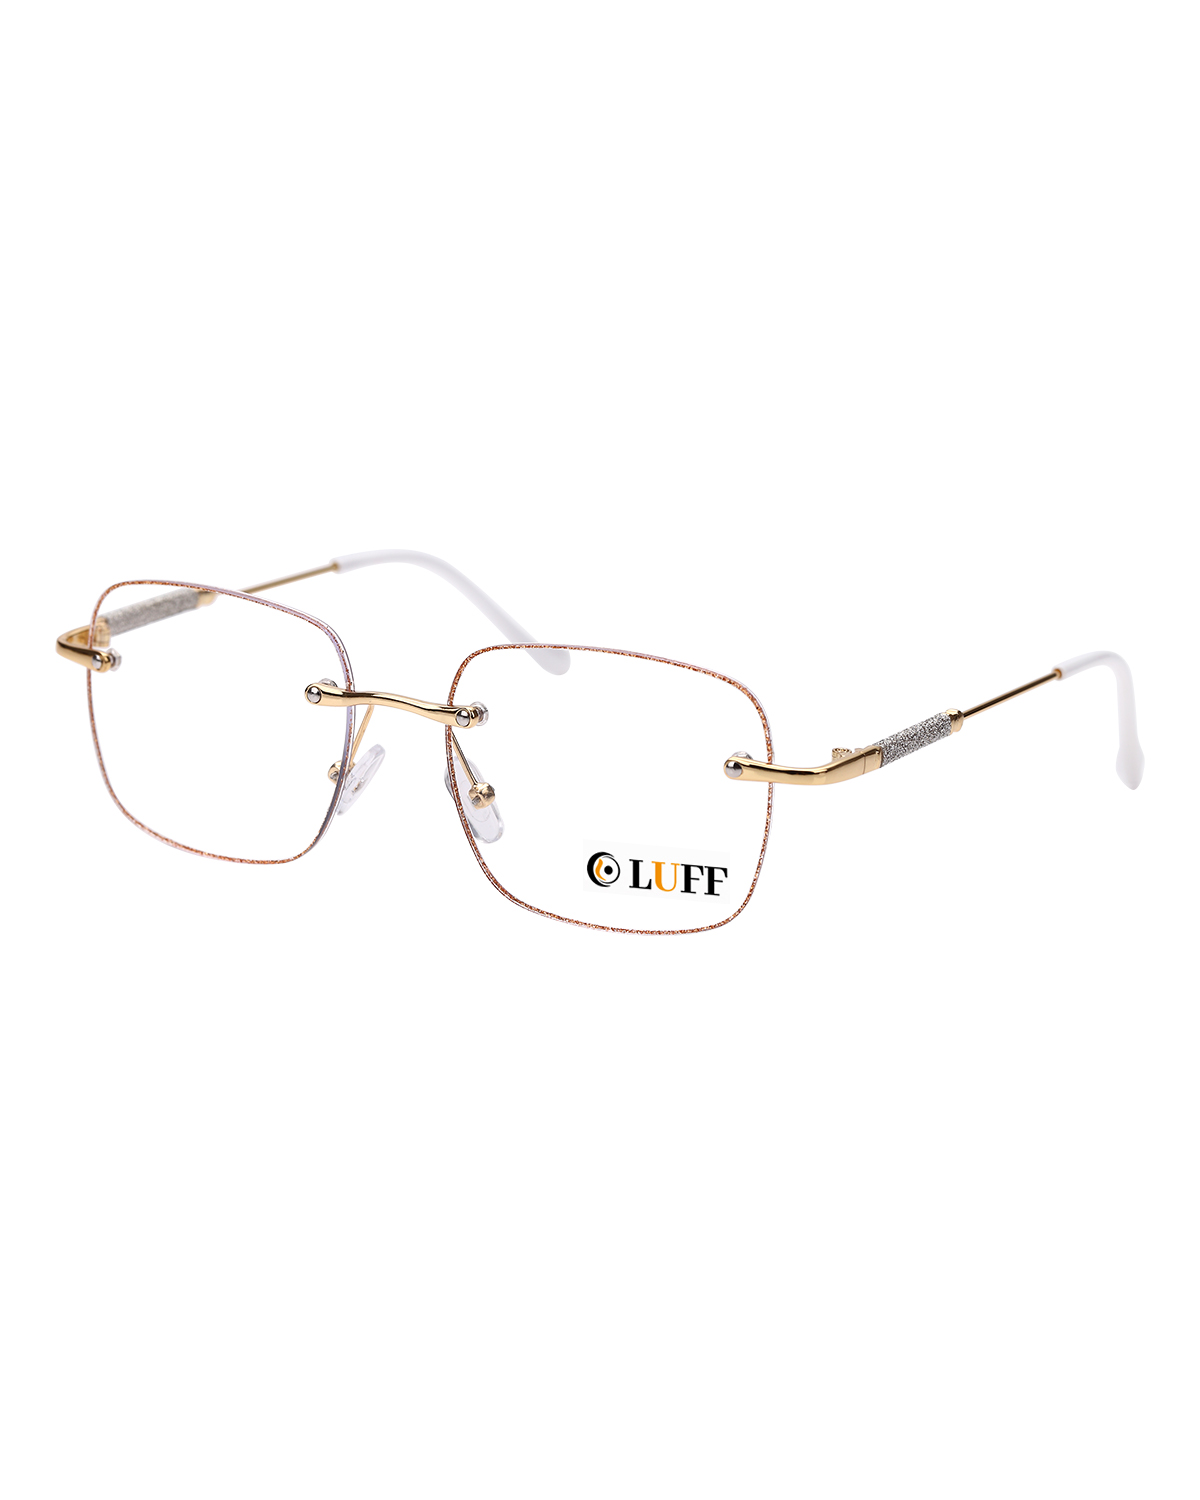 LUFF Rimless Reading Glasses for Women Blue Light Blocking,Fashion Metal Computer Readers,Frameless Eyeglasses Anti Eyestrain